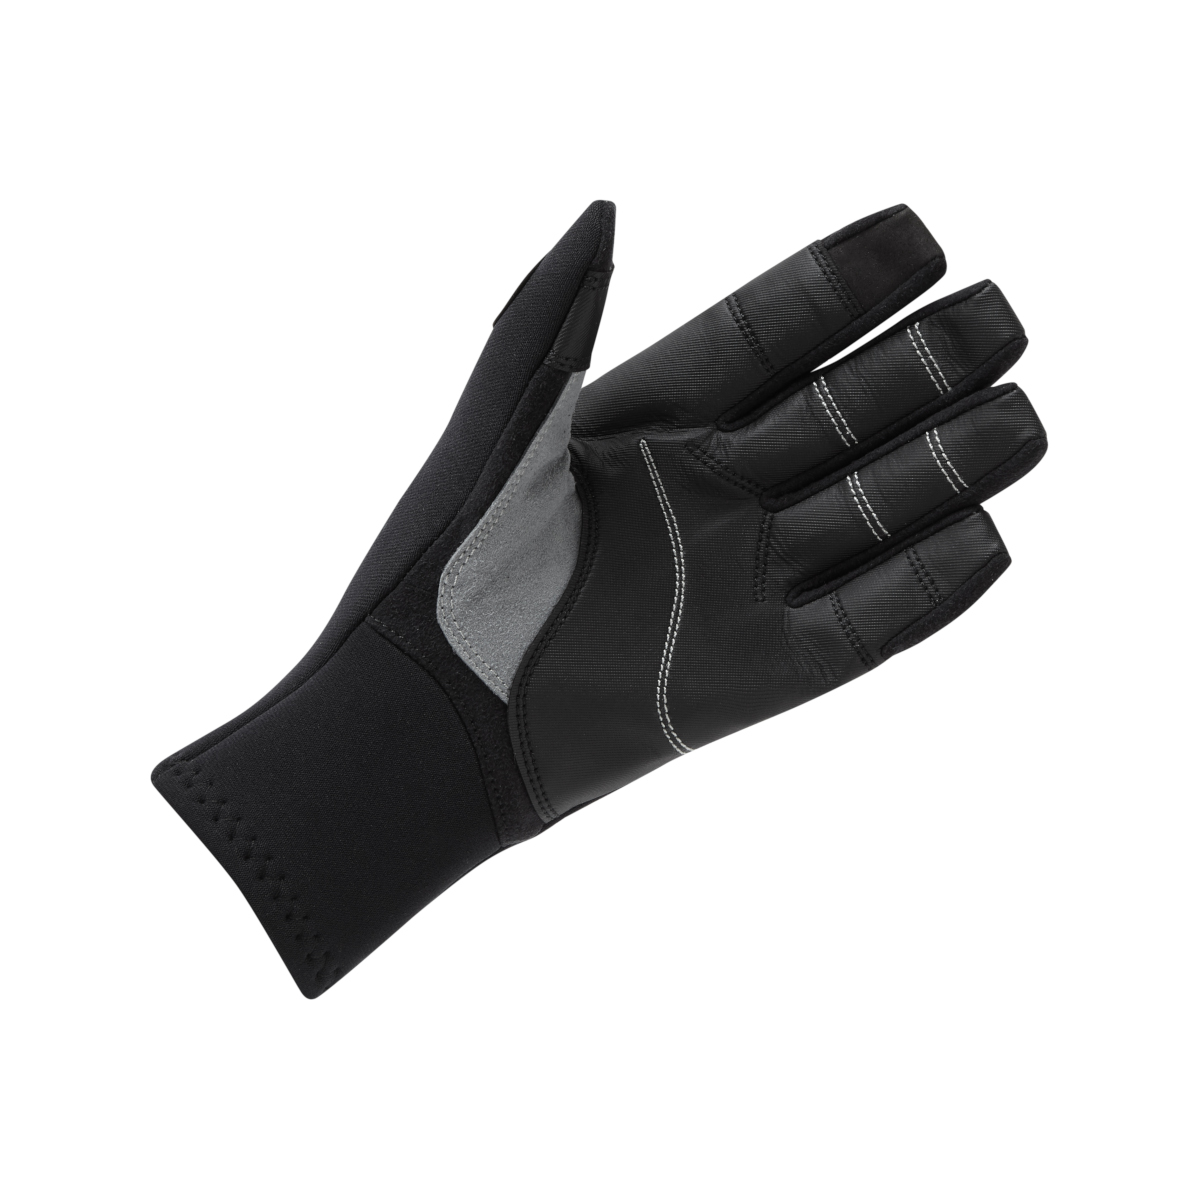 Gill gants de voile à doigts longs, 3 saisons - noir, taille M